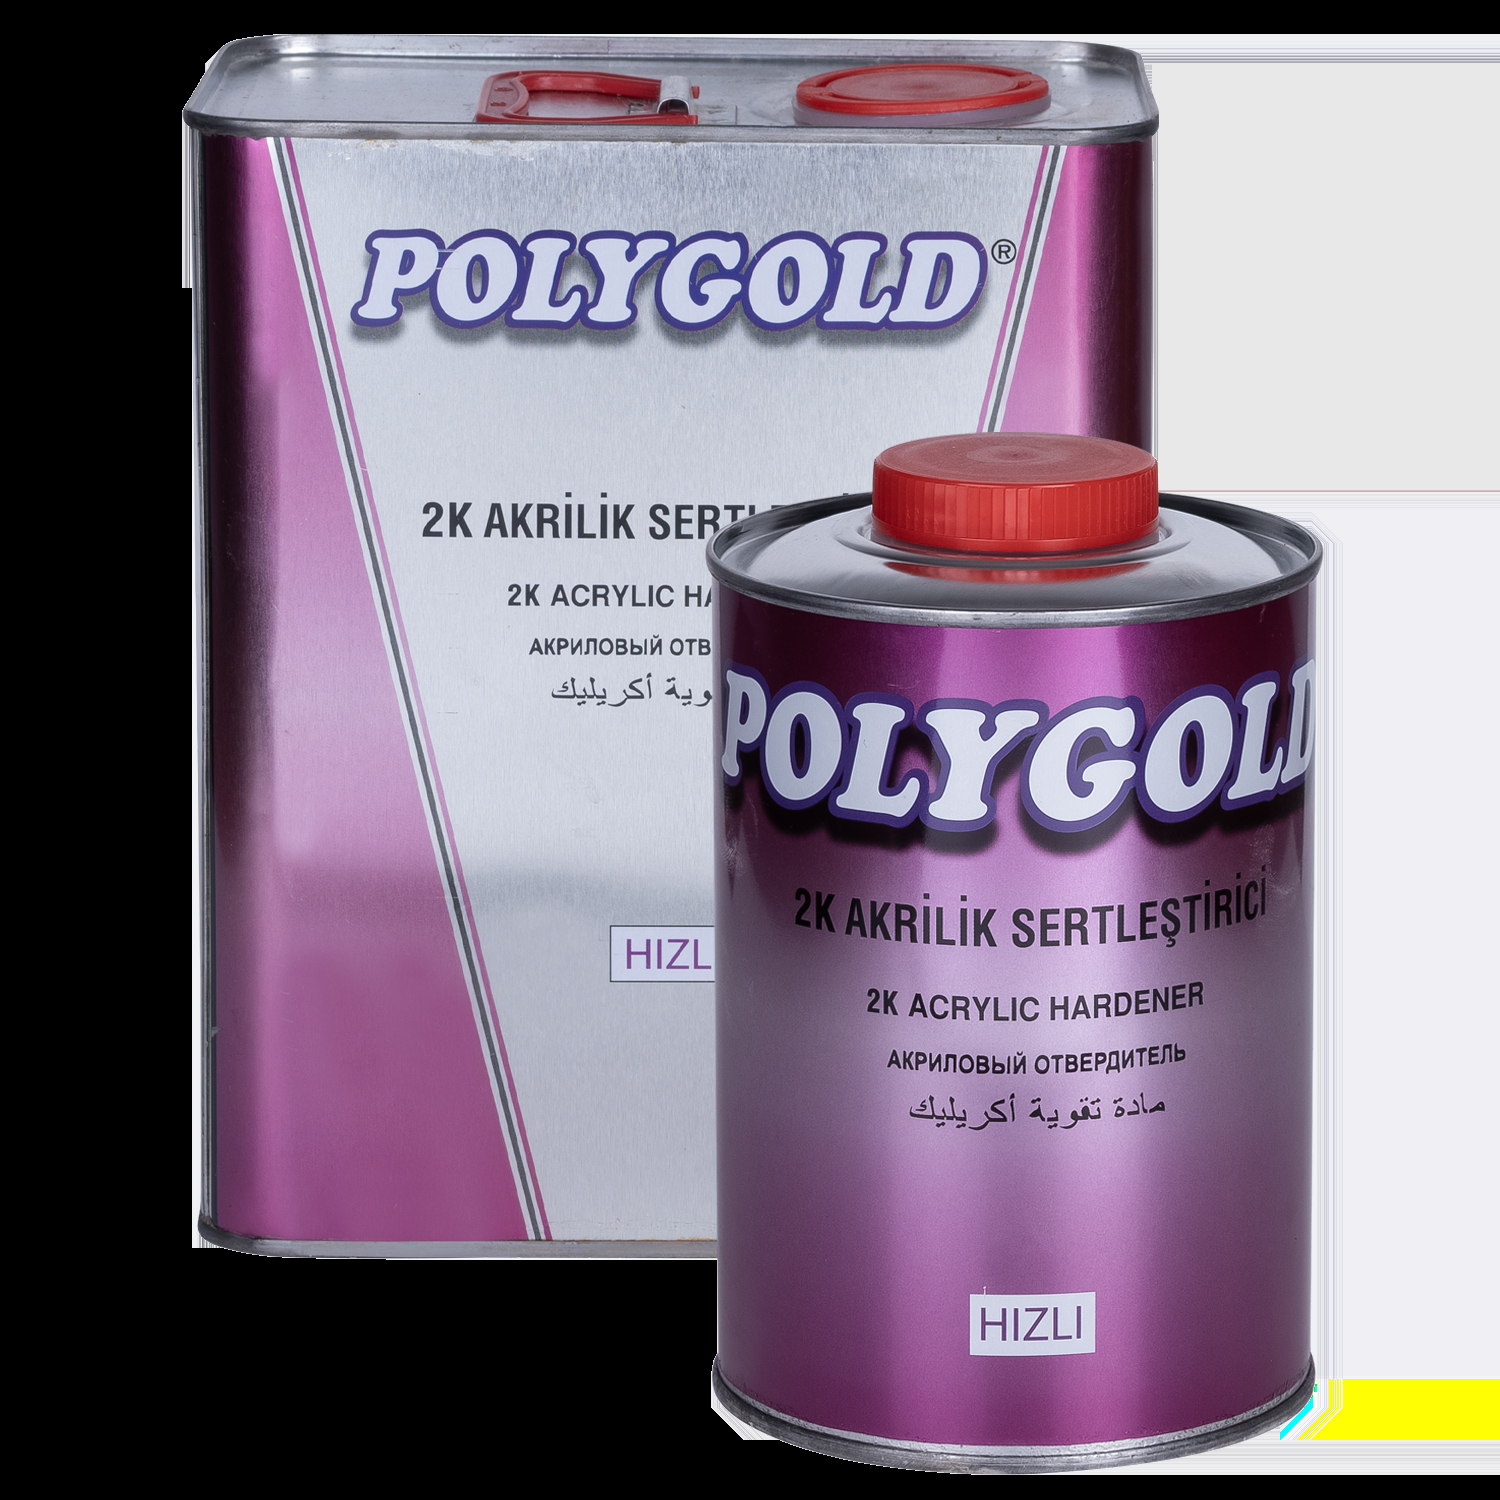 Polygold 2K Akrilik Sertleştirici